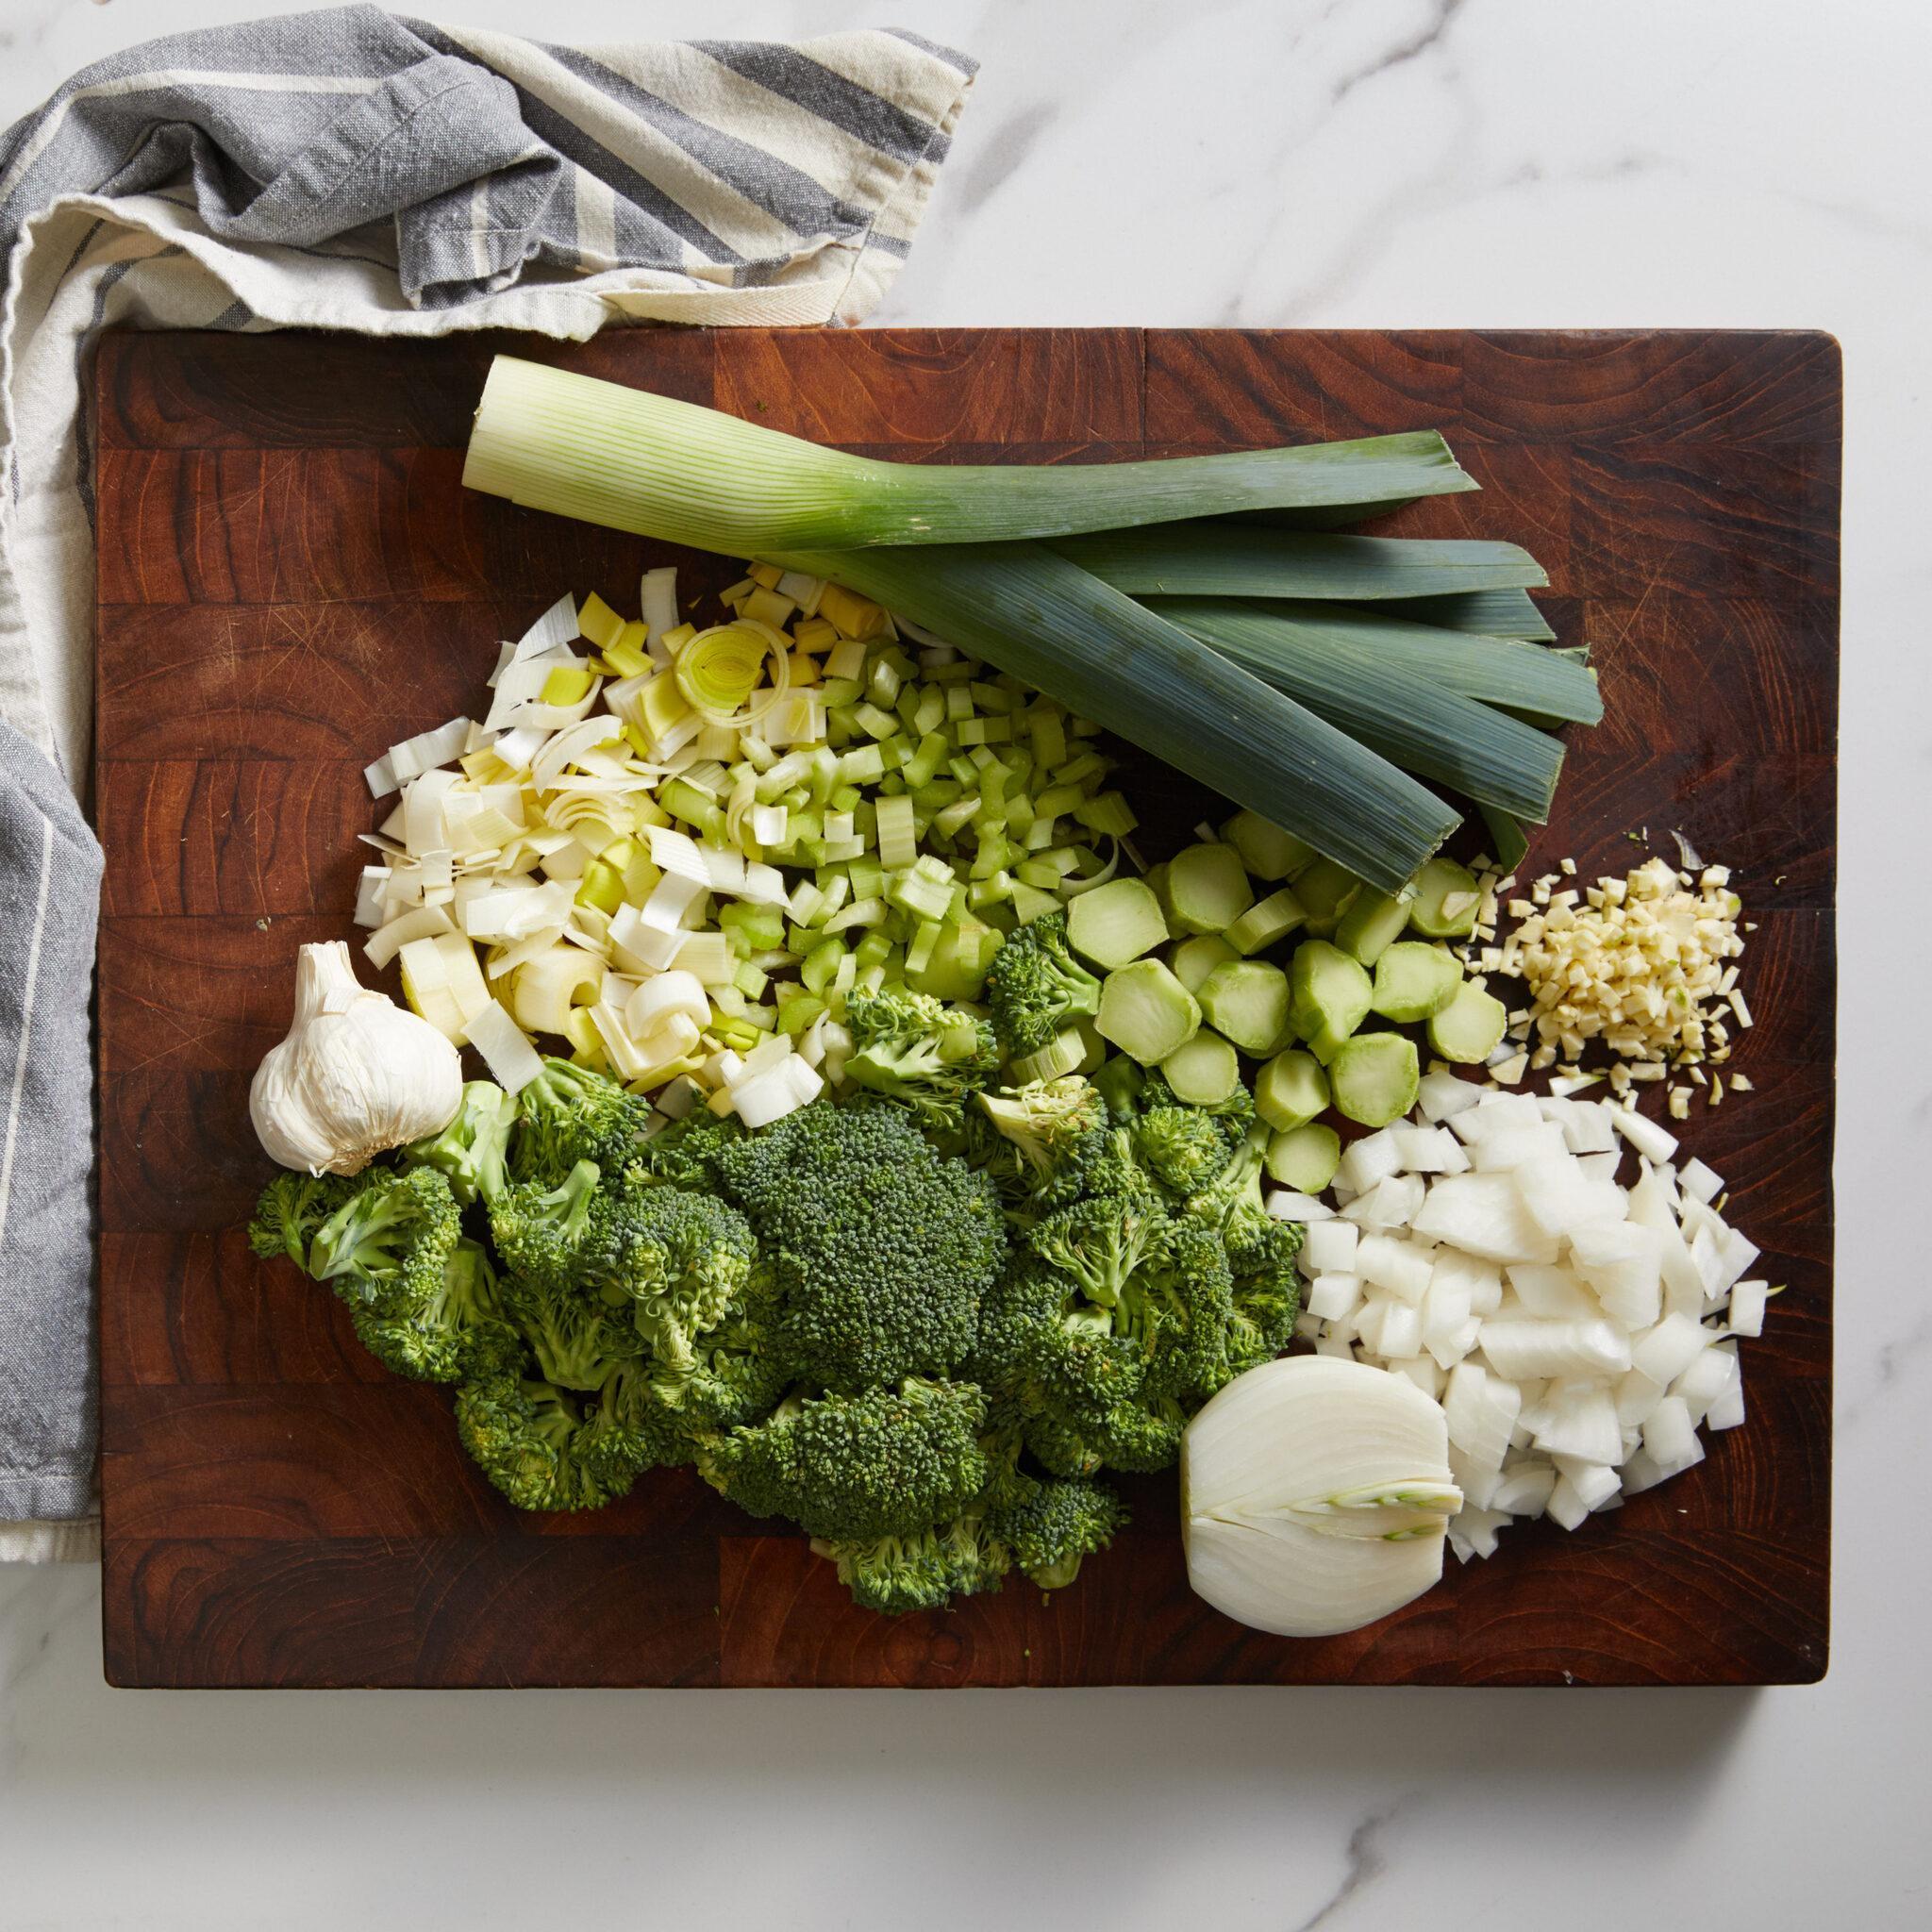 Fresh vegetables on a cutting board.